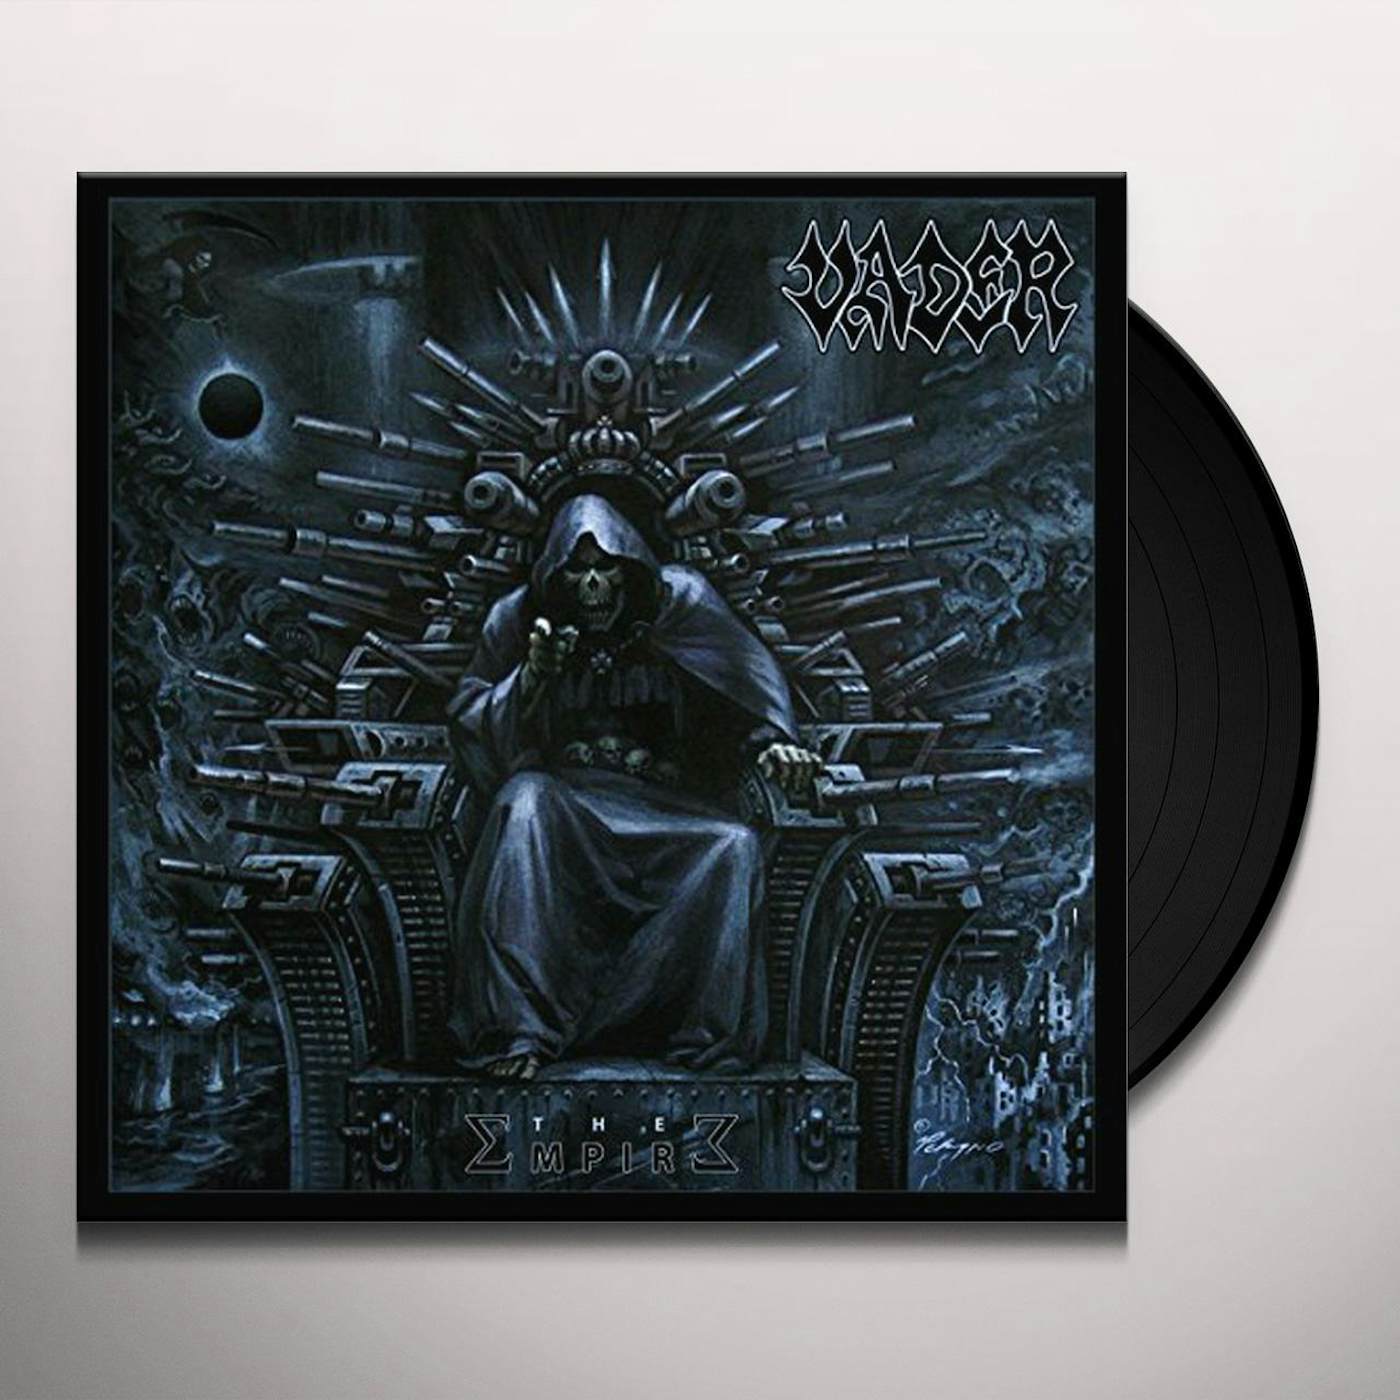 Vader EMPIRE Vinyl Record